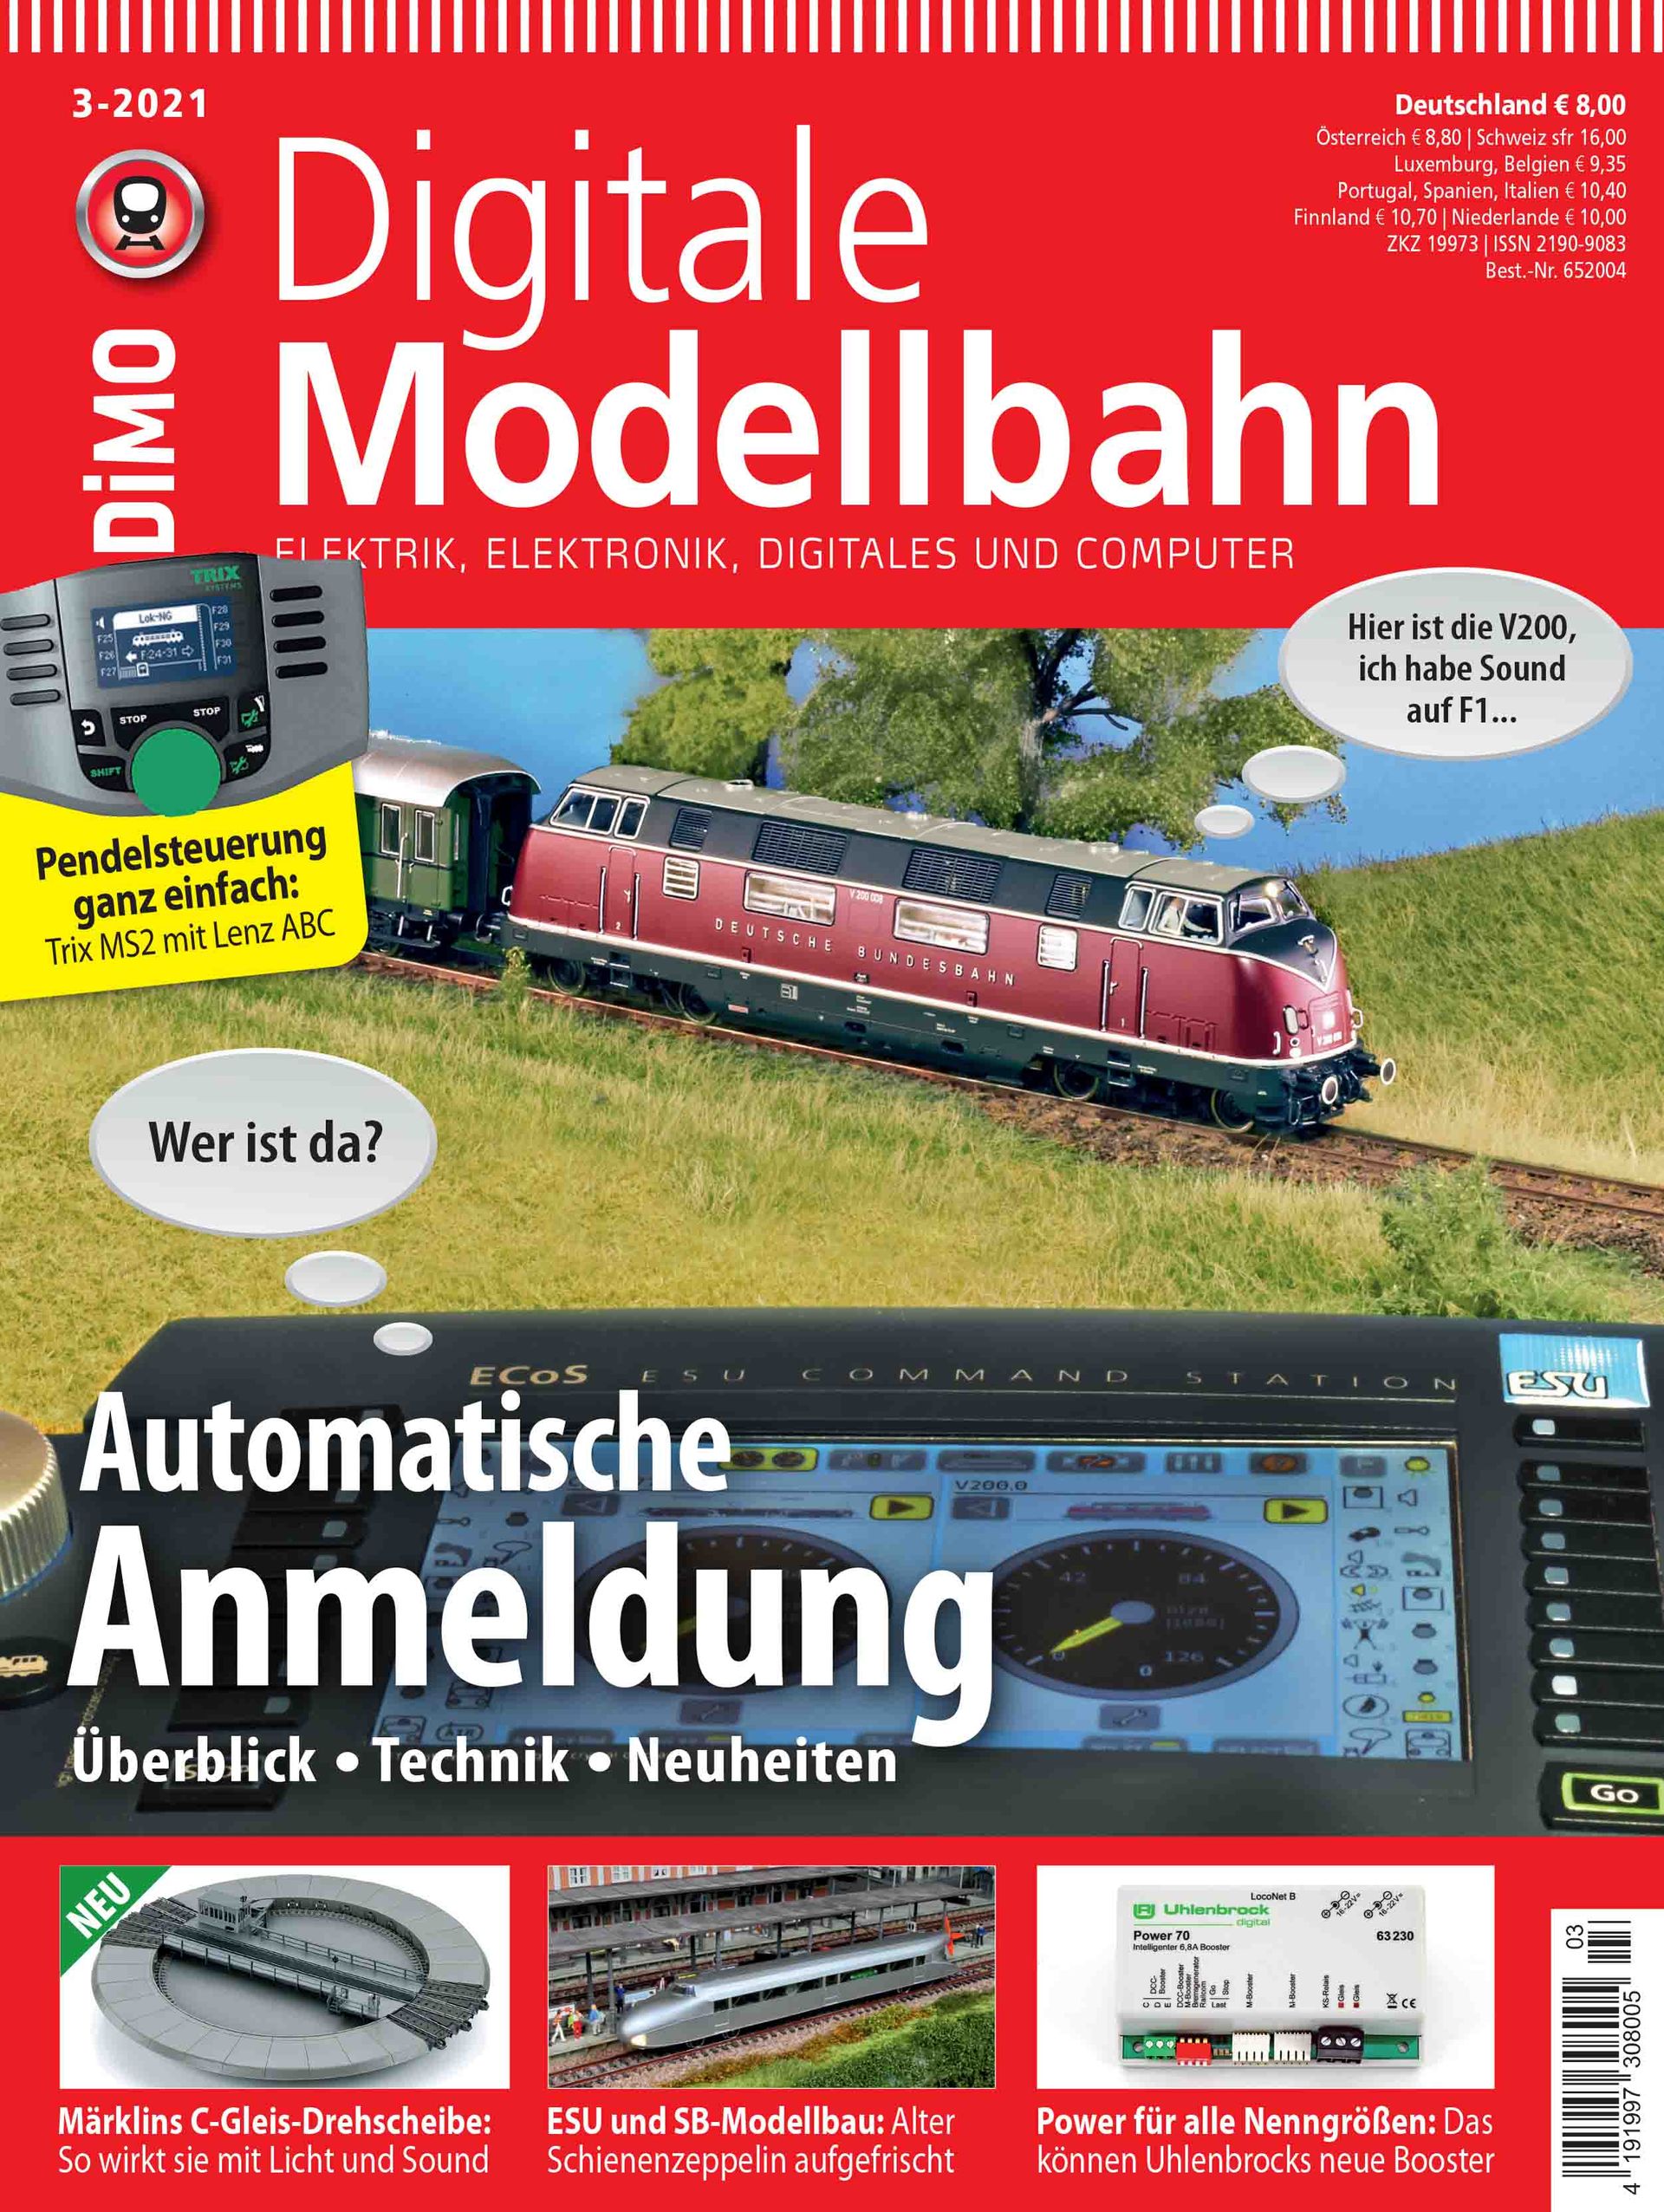 Digitale Modellbahn 3/2021 Automatische Anmeldung